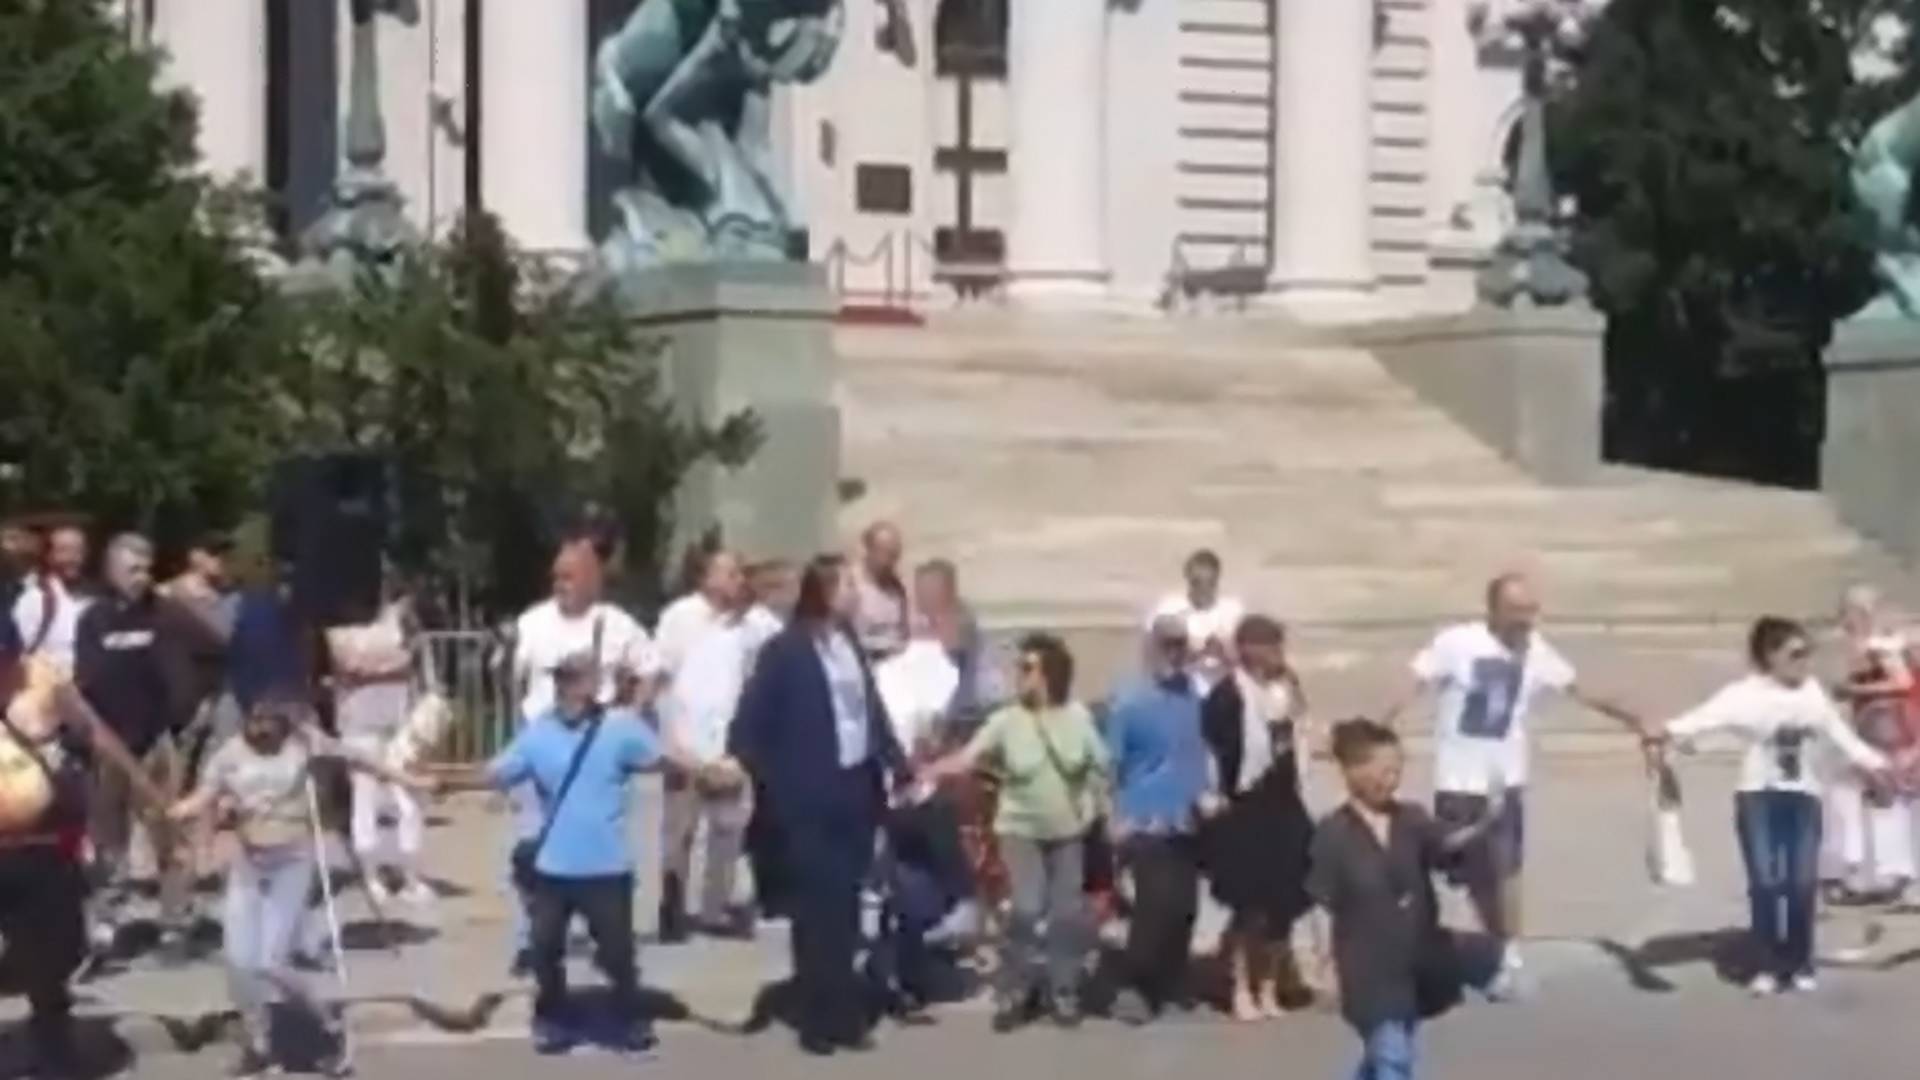 Dok svet i dalje strahuje od korone - Srbi igraju kolo ispred Skupštine